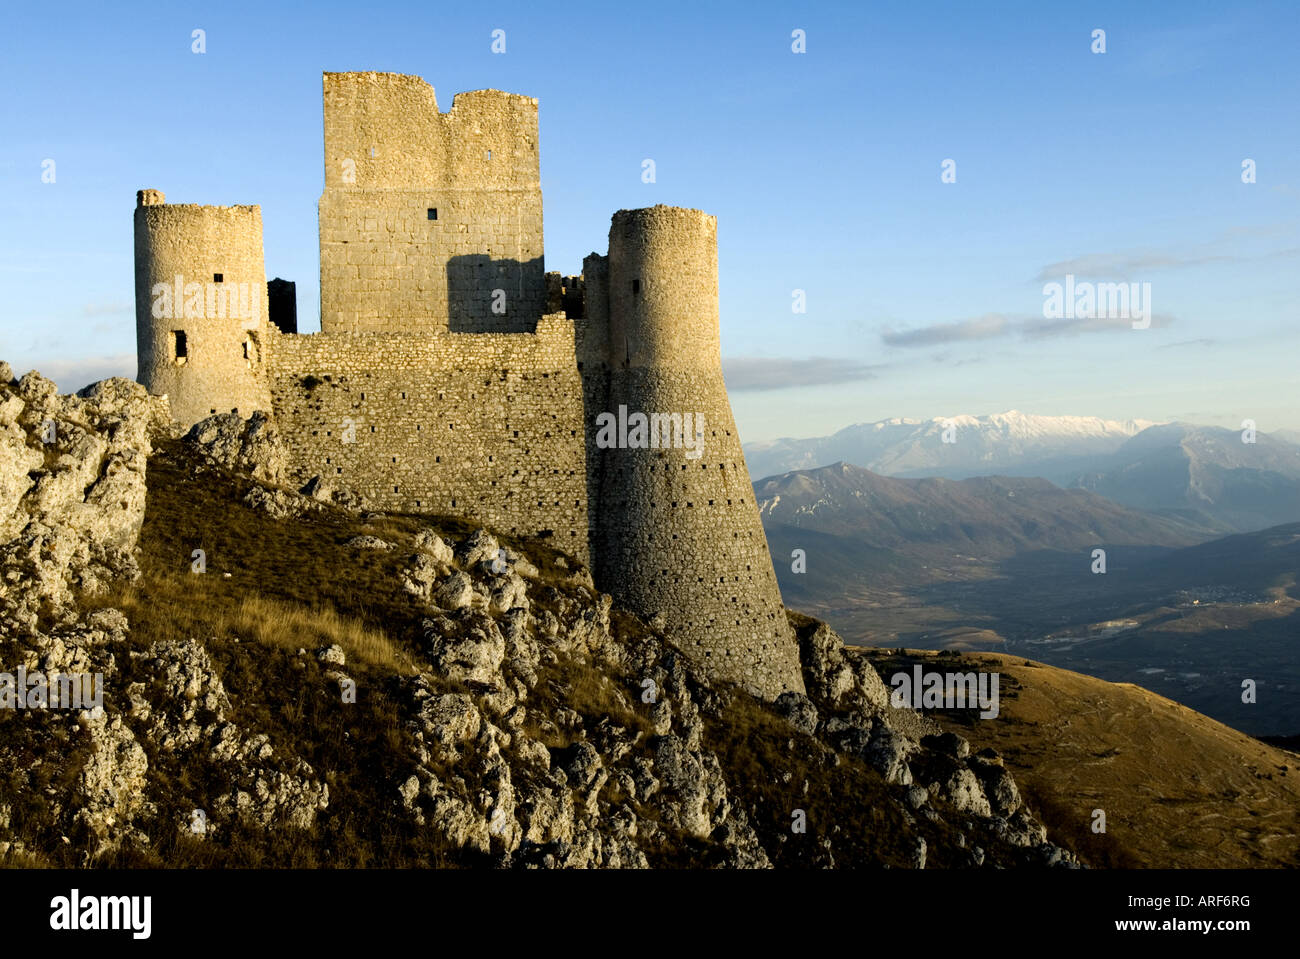 Le rovine del castello di Rocca Calascio nel Parco Nazionale del Gran Sasso - Monti della Laga in Italia Foto Stock